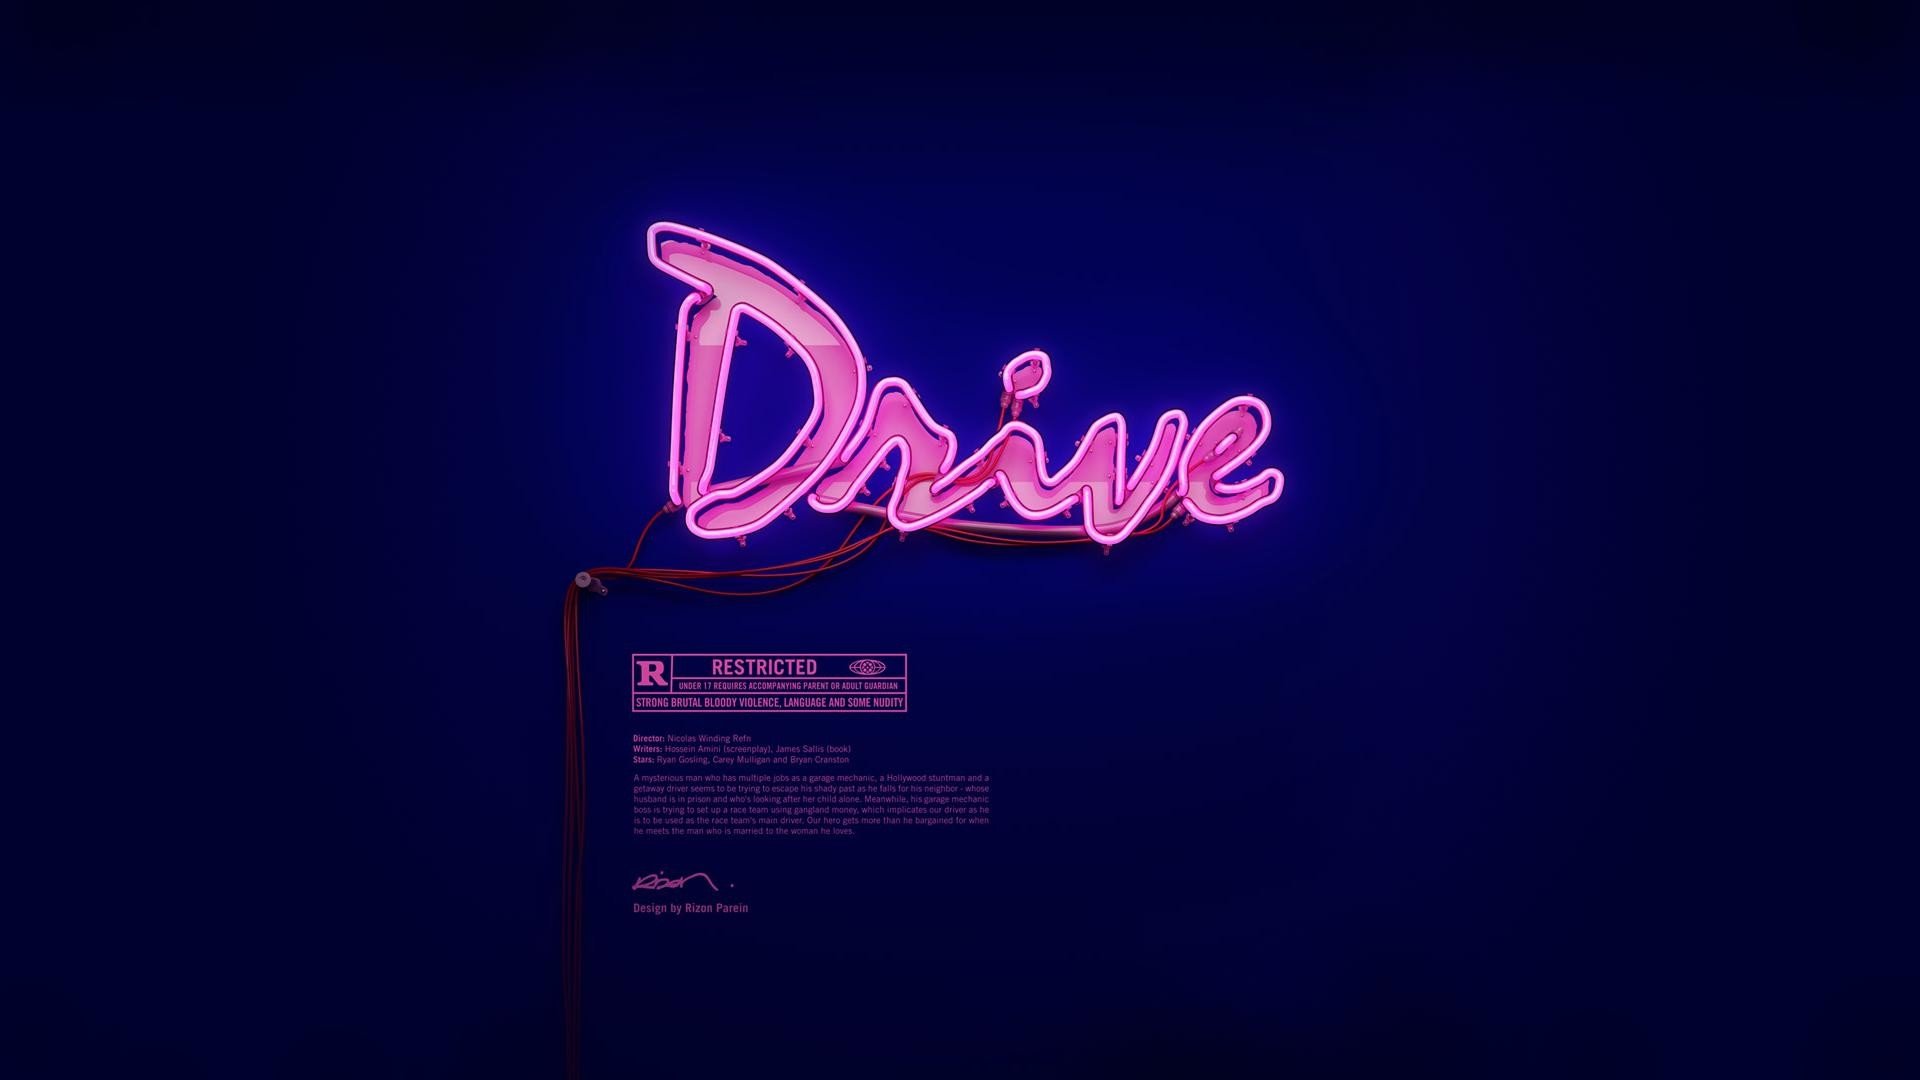 'Drive' soundtrack